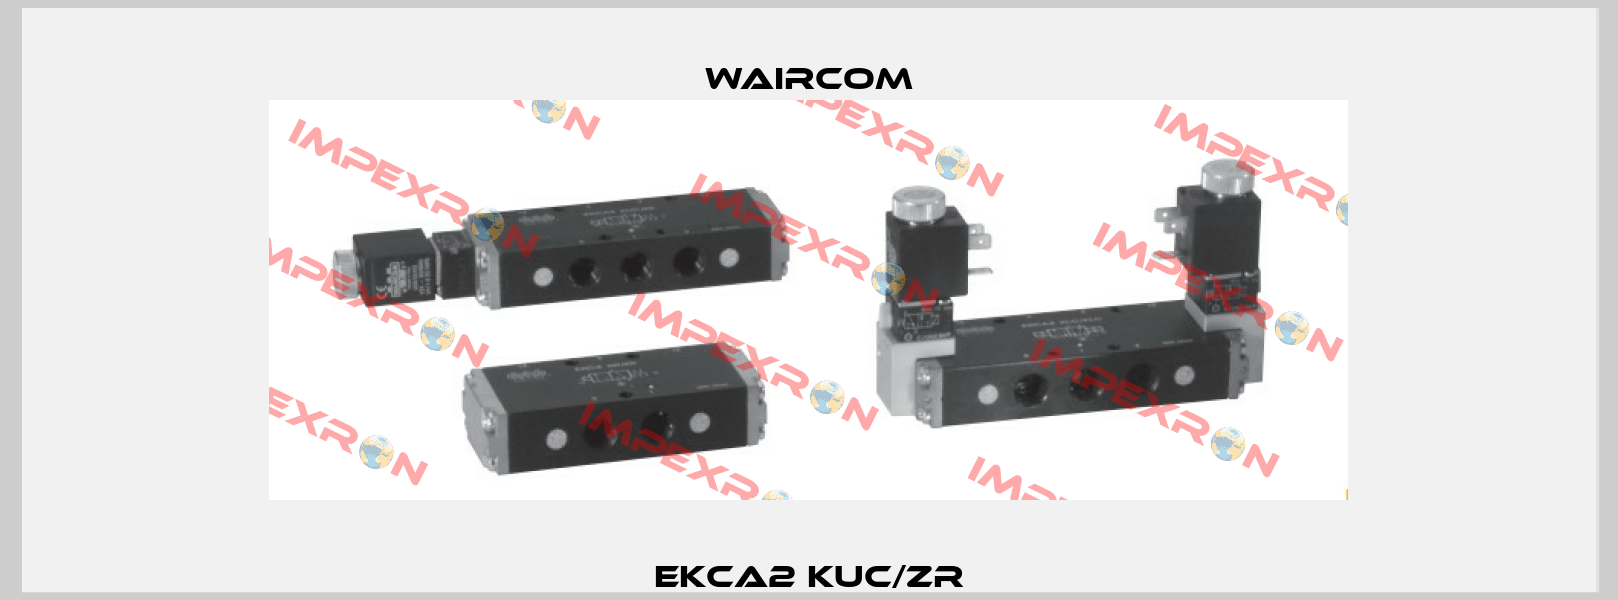 EKCA2 KUC/ZR Waircom